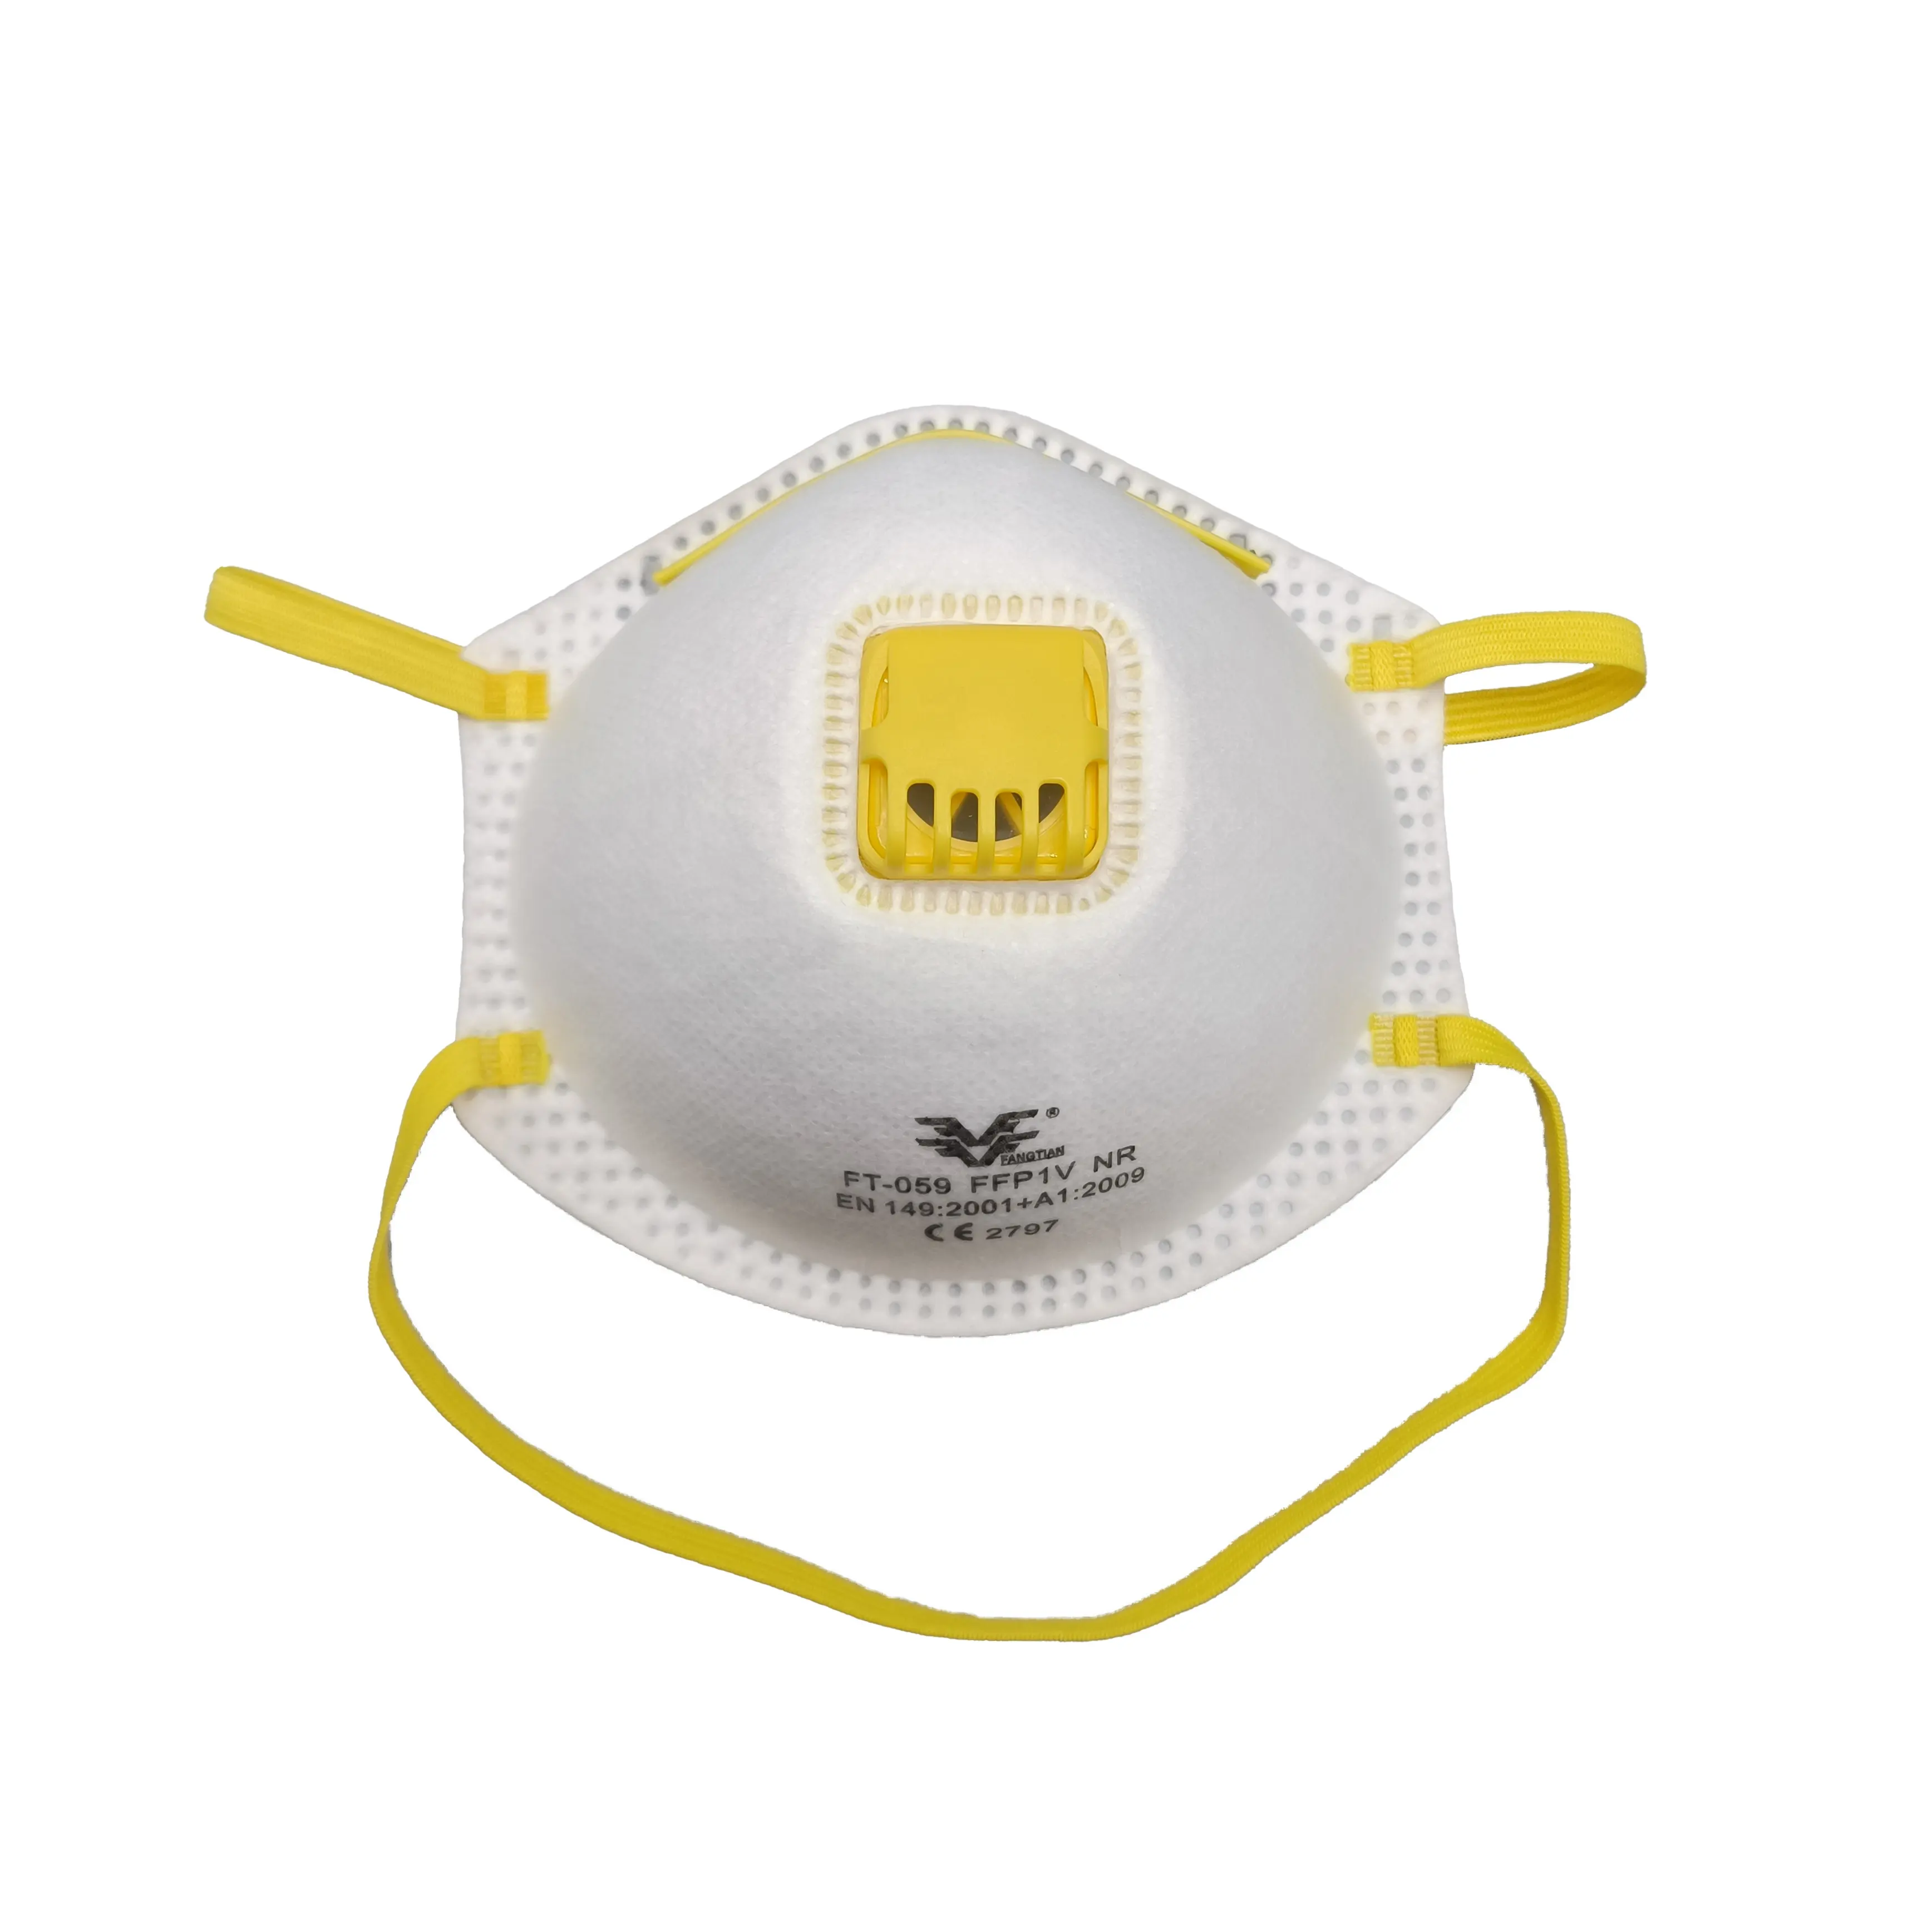 Máscara contra poeira CE com logotipo personalizado FFP1 NR FFP1 máscara contra poeira facial com válvula respirador/válvula de exalação